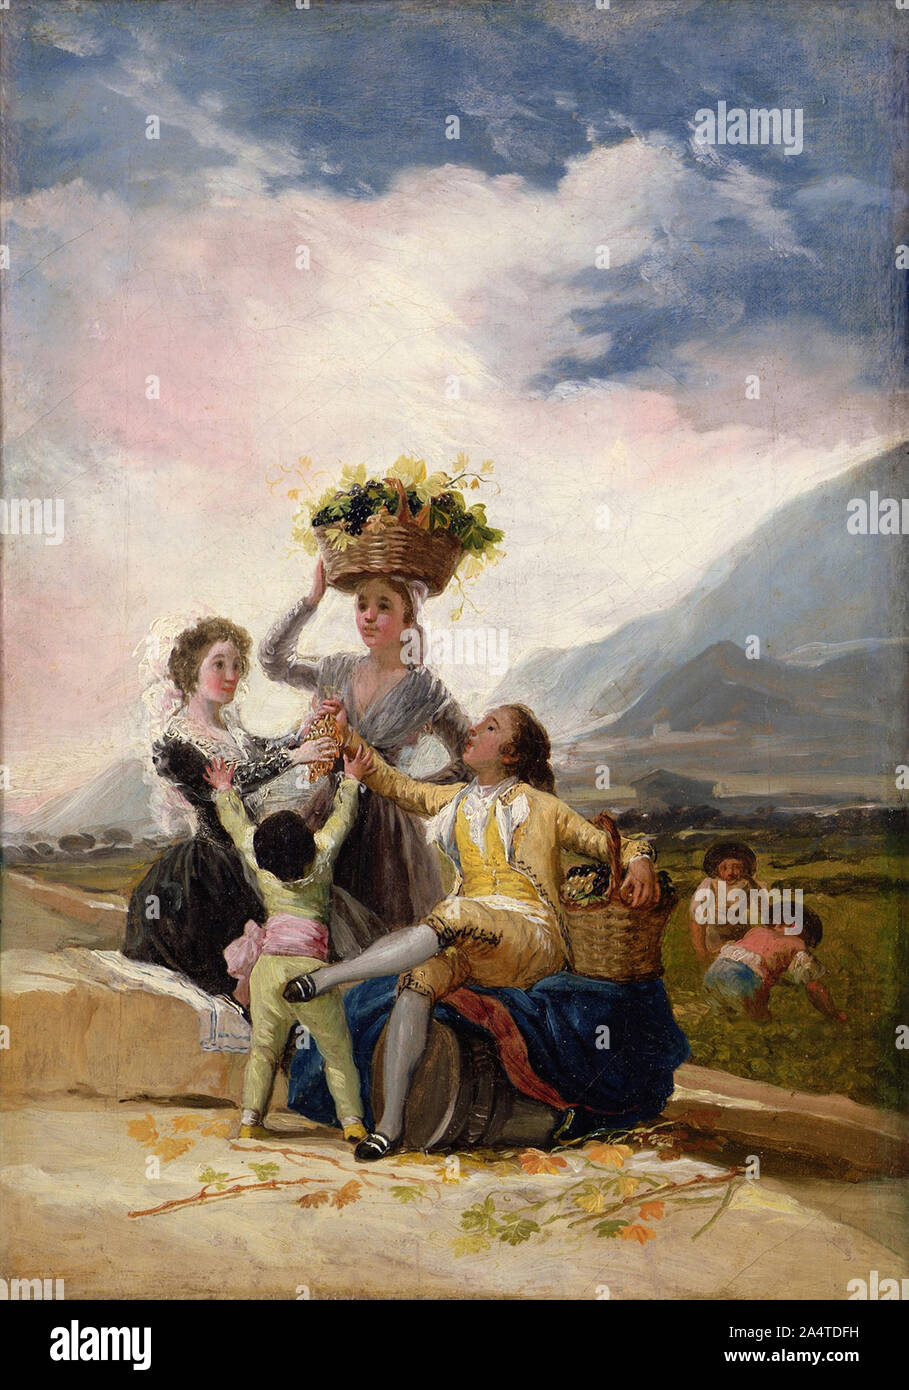 Herbst (Öl auf Leinwand) von Goya y Lucientes, Francisco Jose de (1746-1828); 34x24,2 cm; Sterling & Francine Clark Art Institute, Williamstown, USA; Spanisch, ohne Urheberrecht Stockfoto